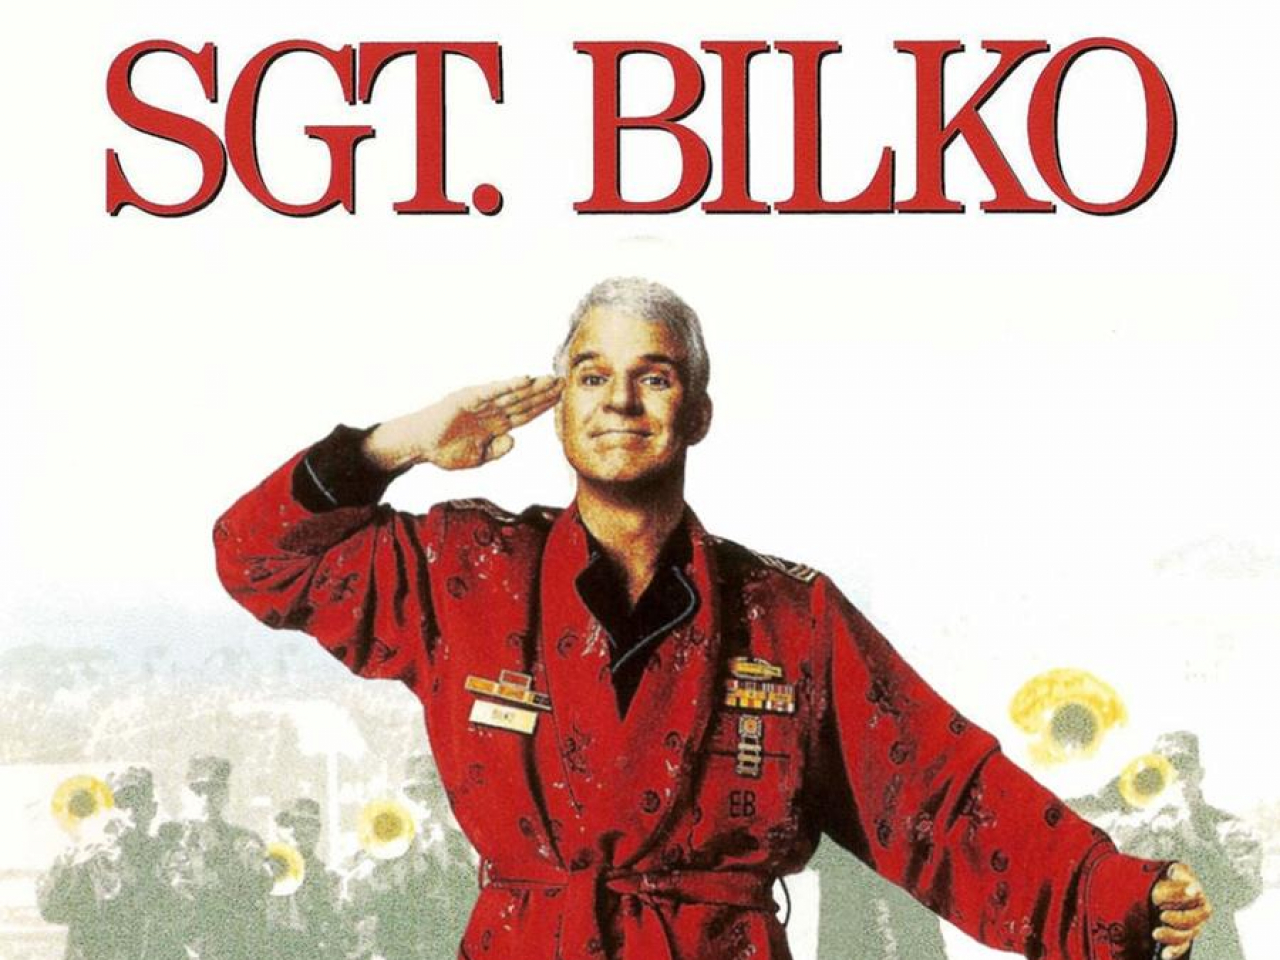 Sergente Bilko